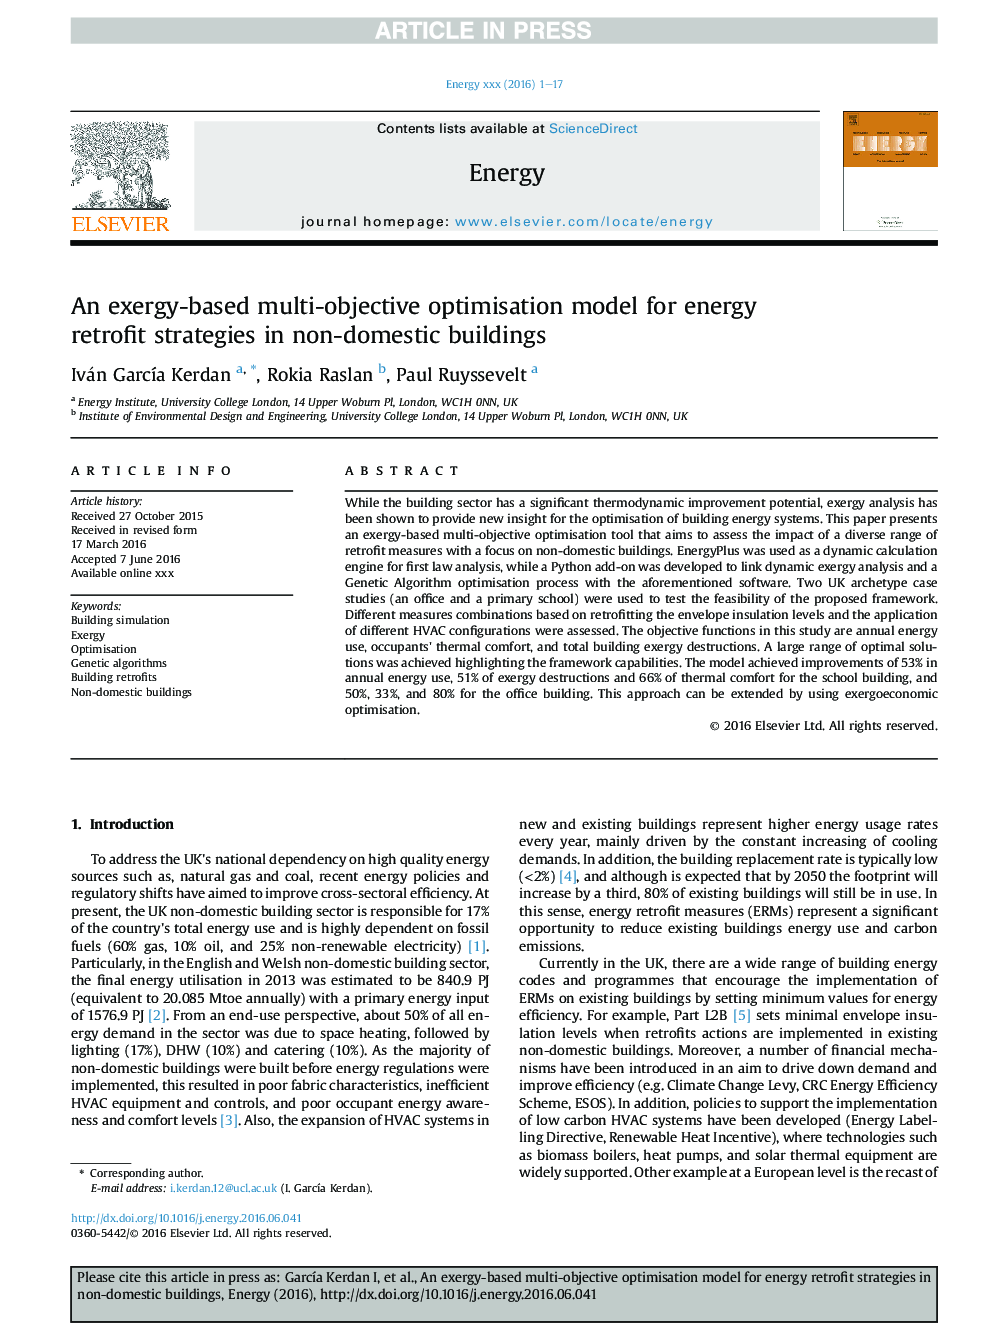 مدل بهینه سازی چند منظوره مبتنی بر اگزرژی برای استراتژی های تکمیل انرژی در ساختمان های غیر داخلی 